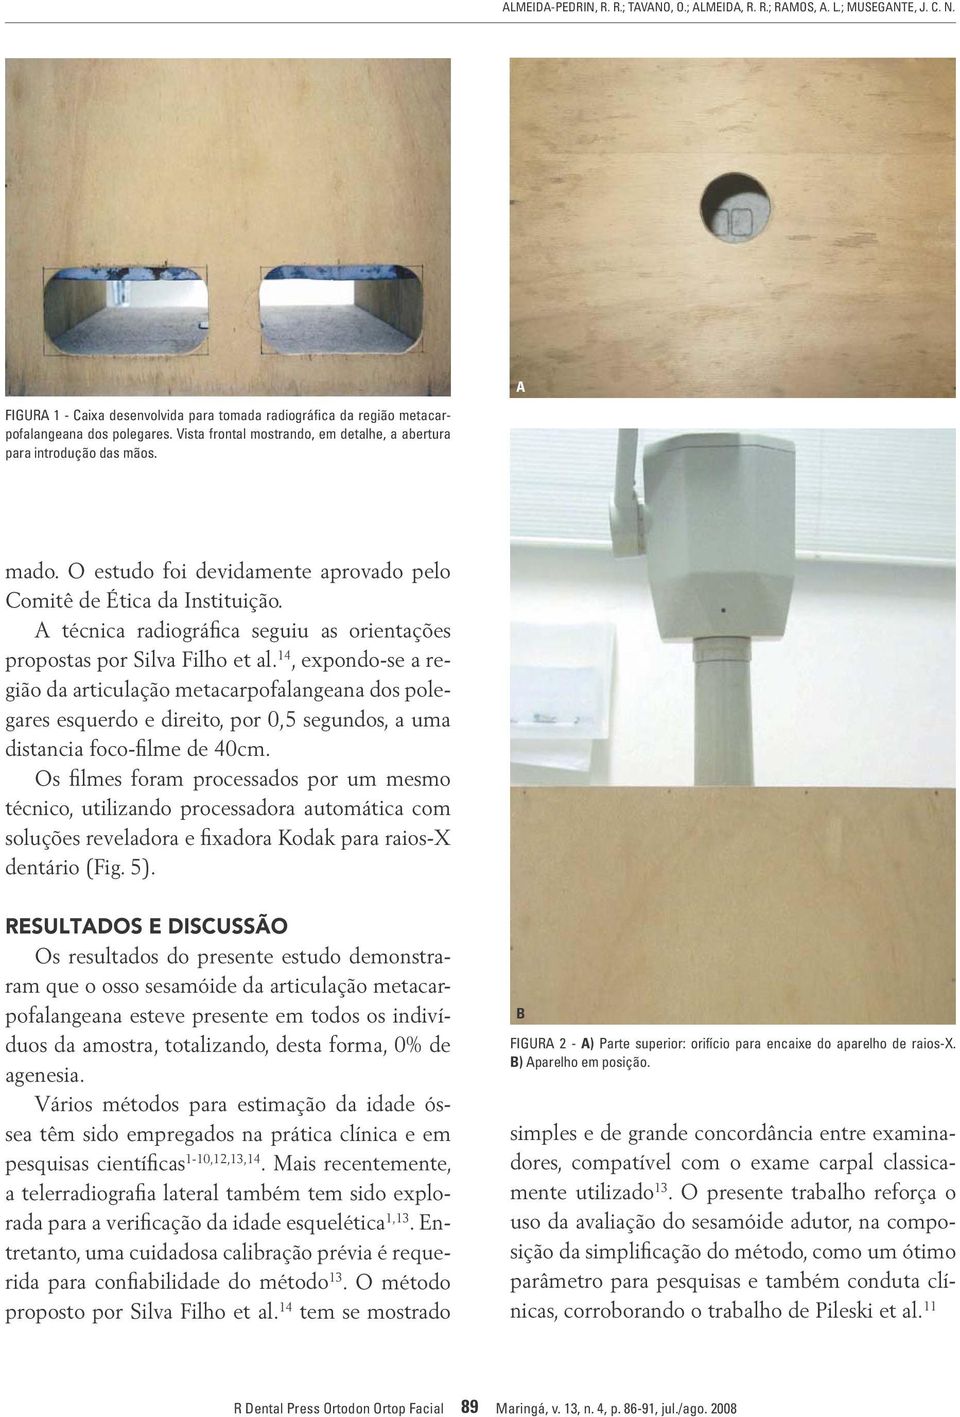 A técnica radiográfica seguiu as orientações propostas por Silva Filho et al.